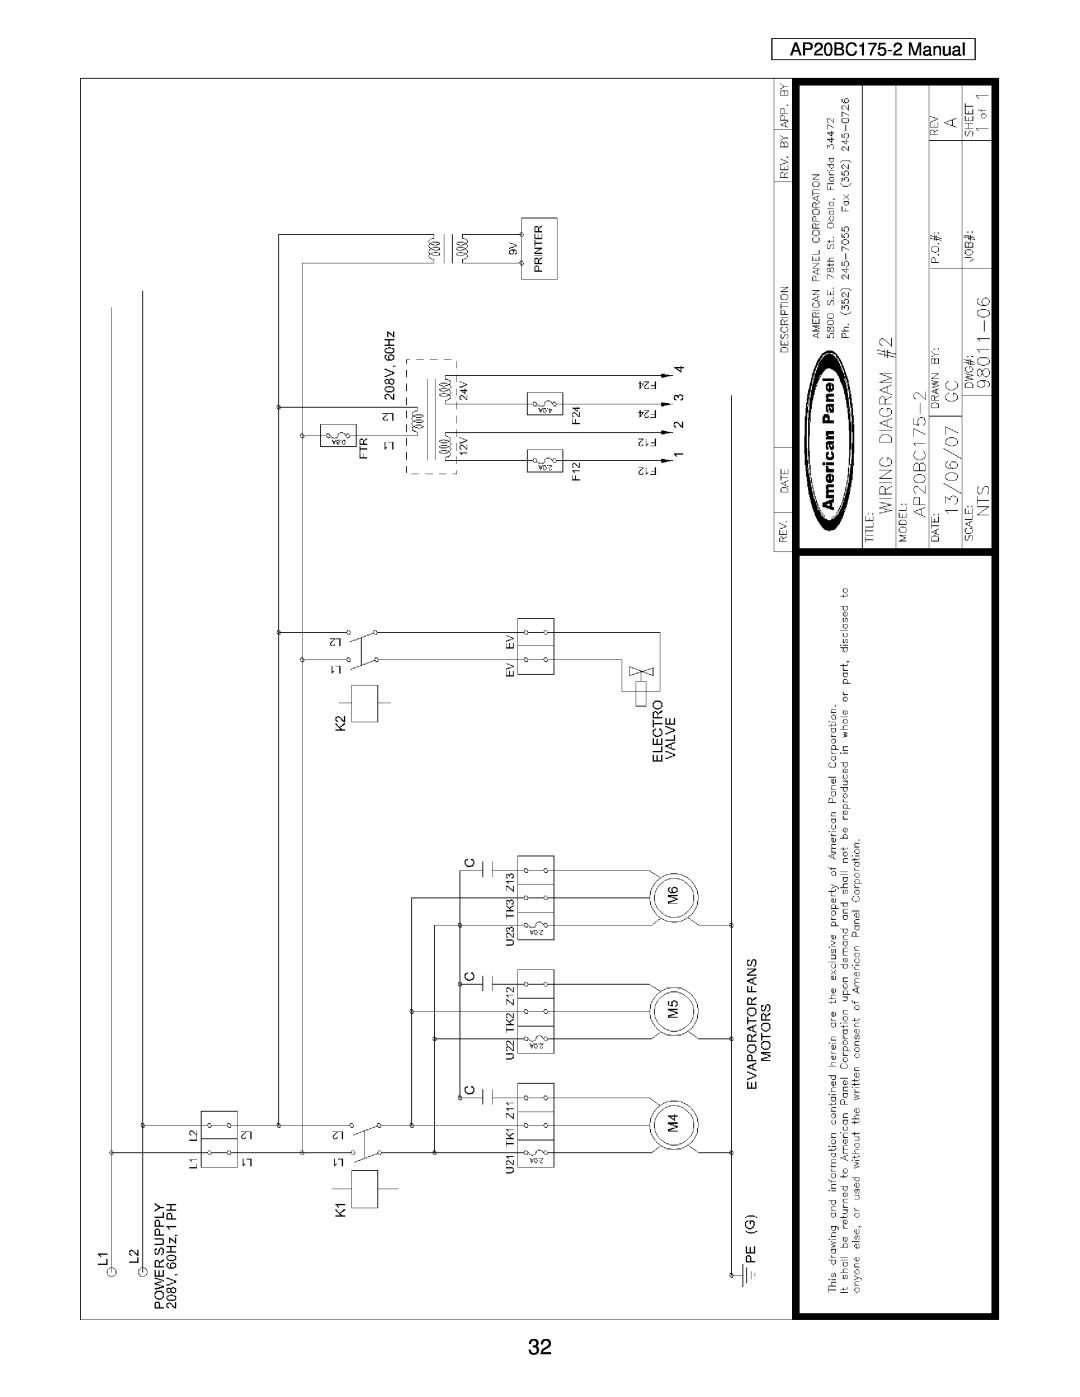 American Panel user manual AP20BC175-2 Manual 